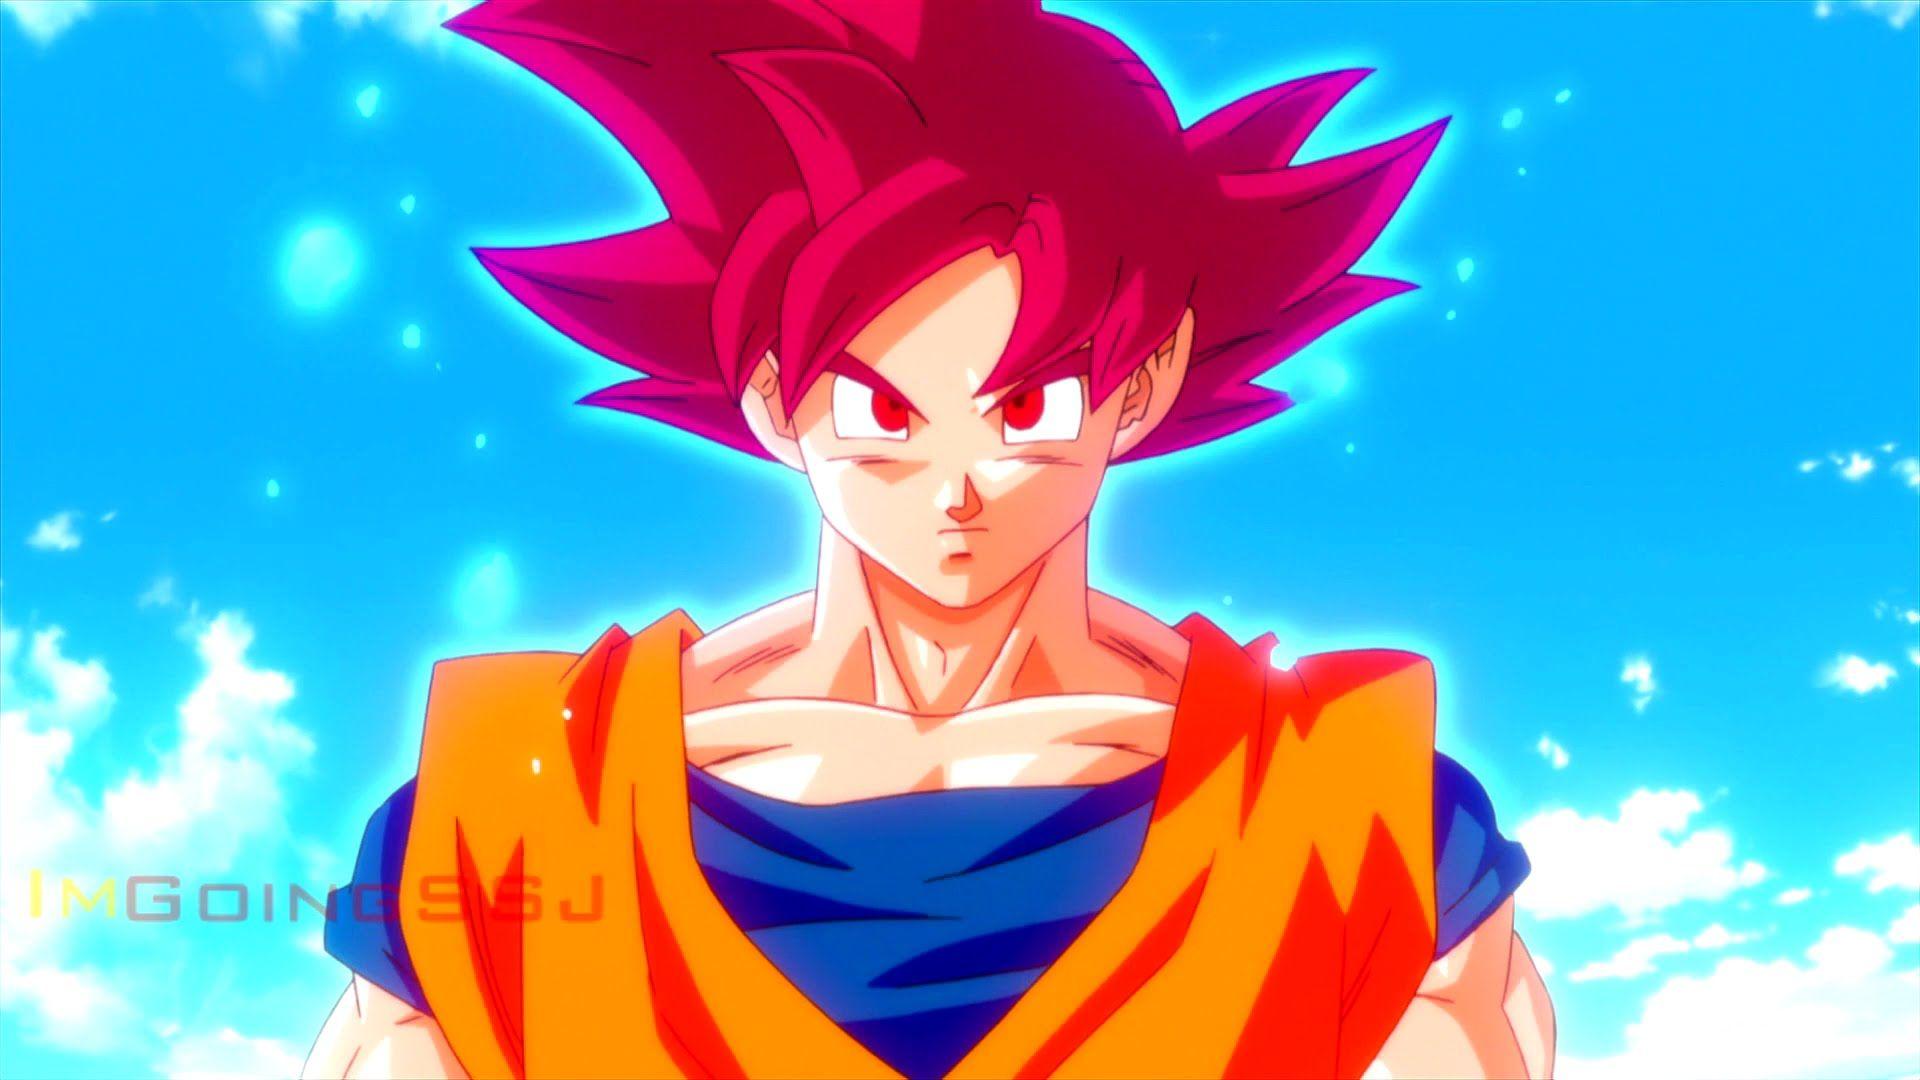 Current Super Saiyan Goku VS. BoG Super Saiyan God Goku